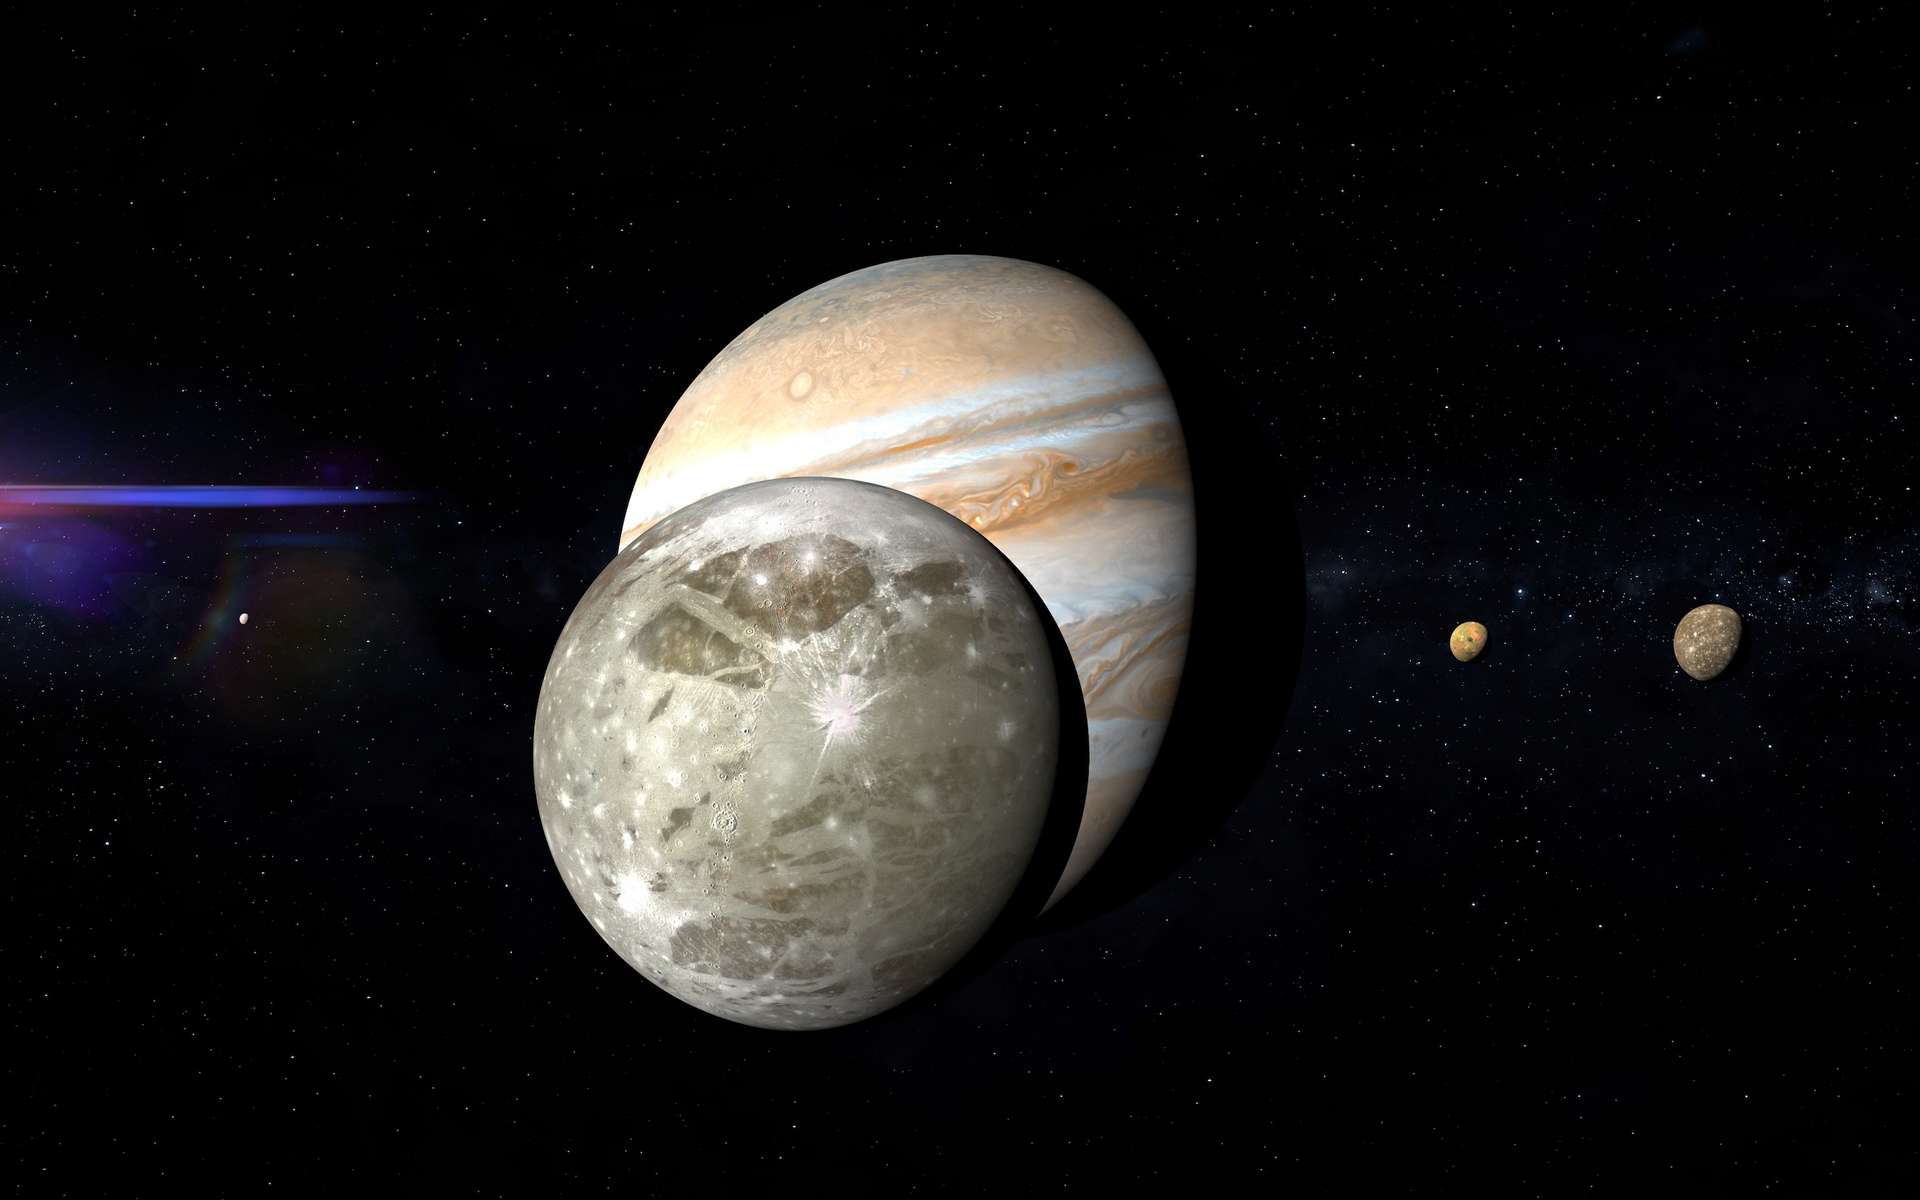 La sonde Juice part demain explorer les lunes potentiellement habitables de Jupiter